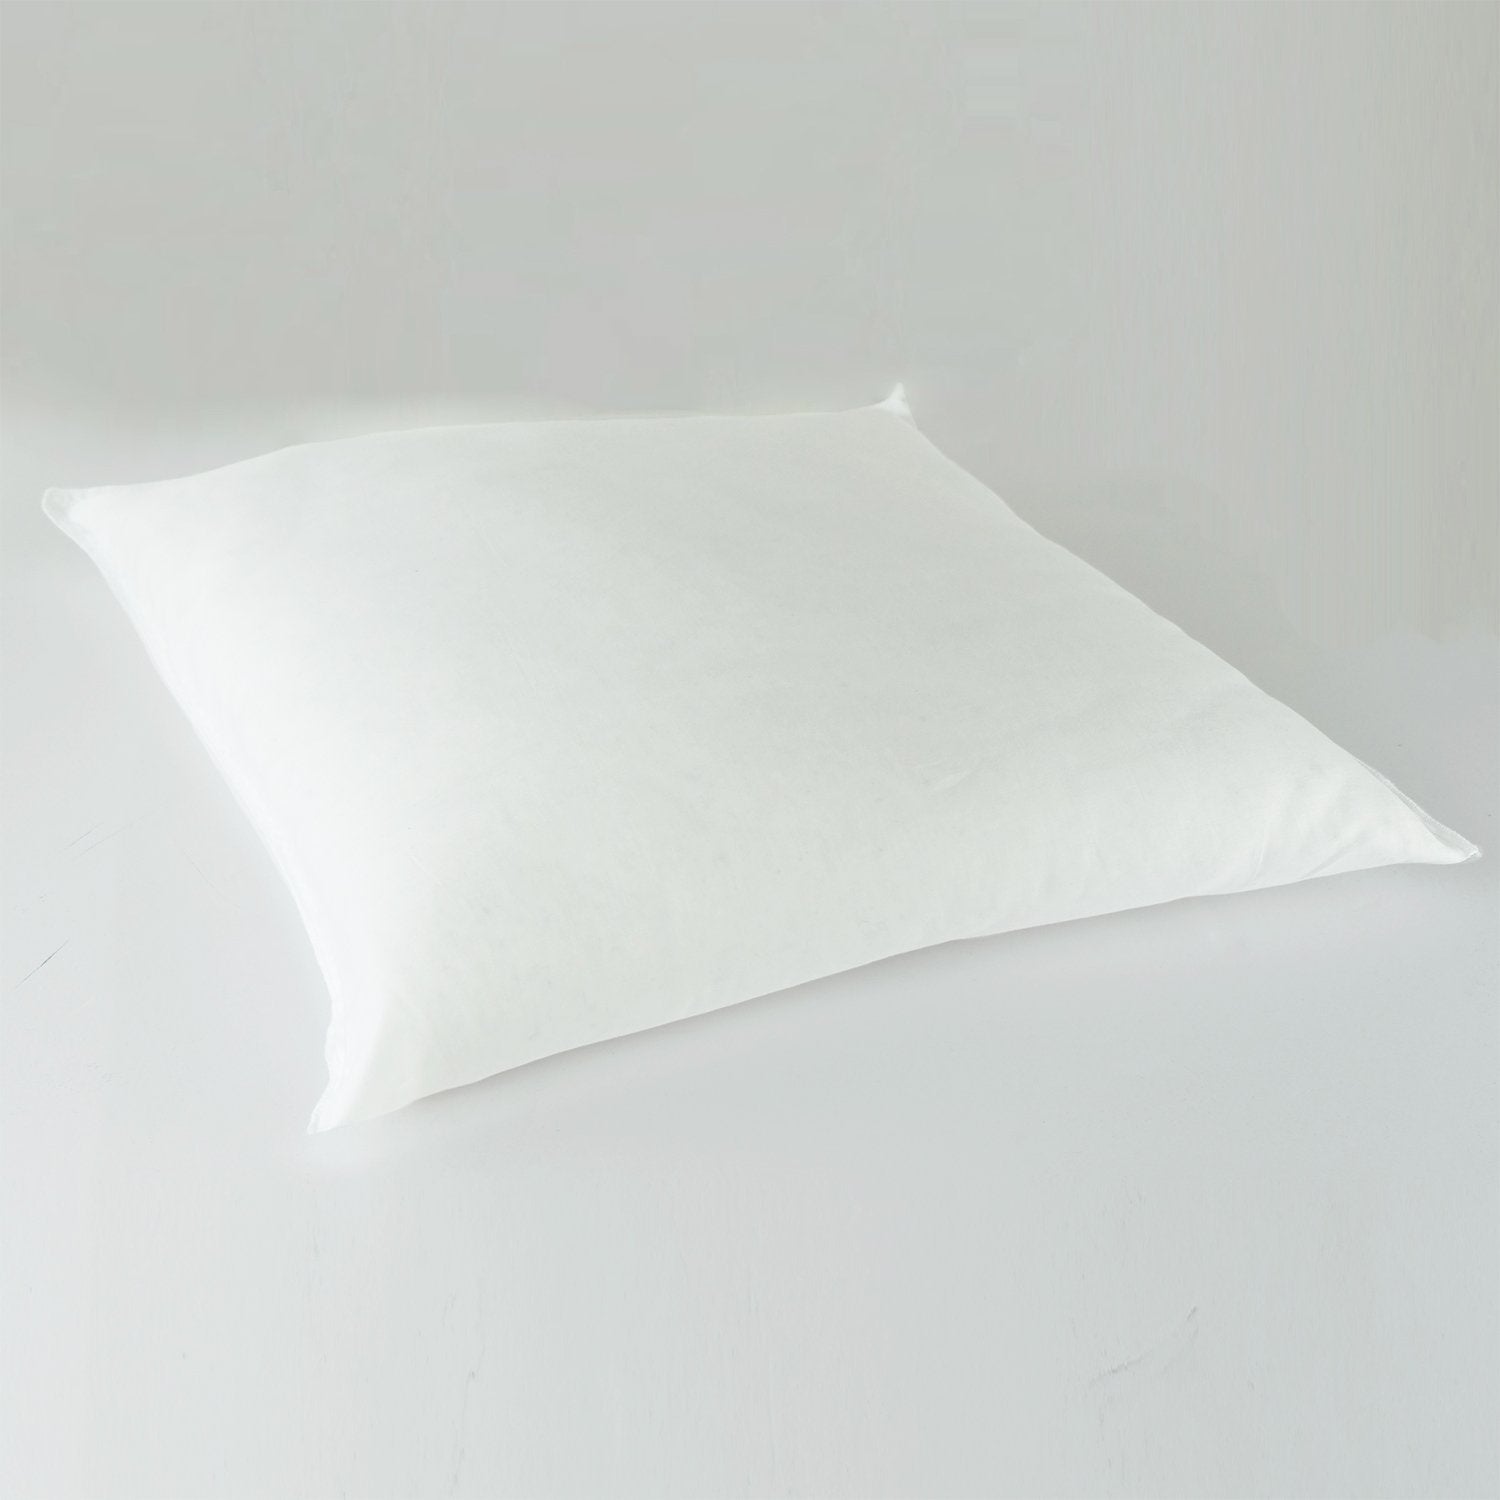 J-Life Espresso Zabuton Floor Pillow_Pillows & Shams_Zabuton Floor Pillows_100% Cotton_Reversible_Handmade